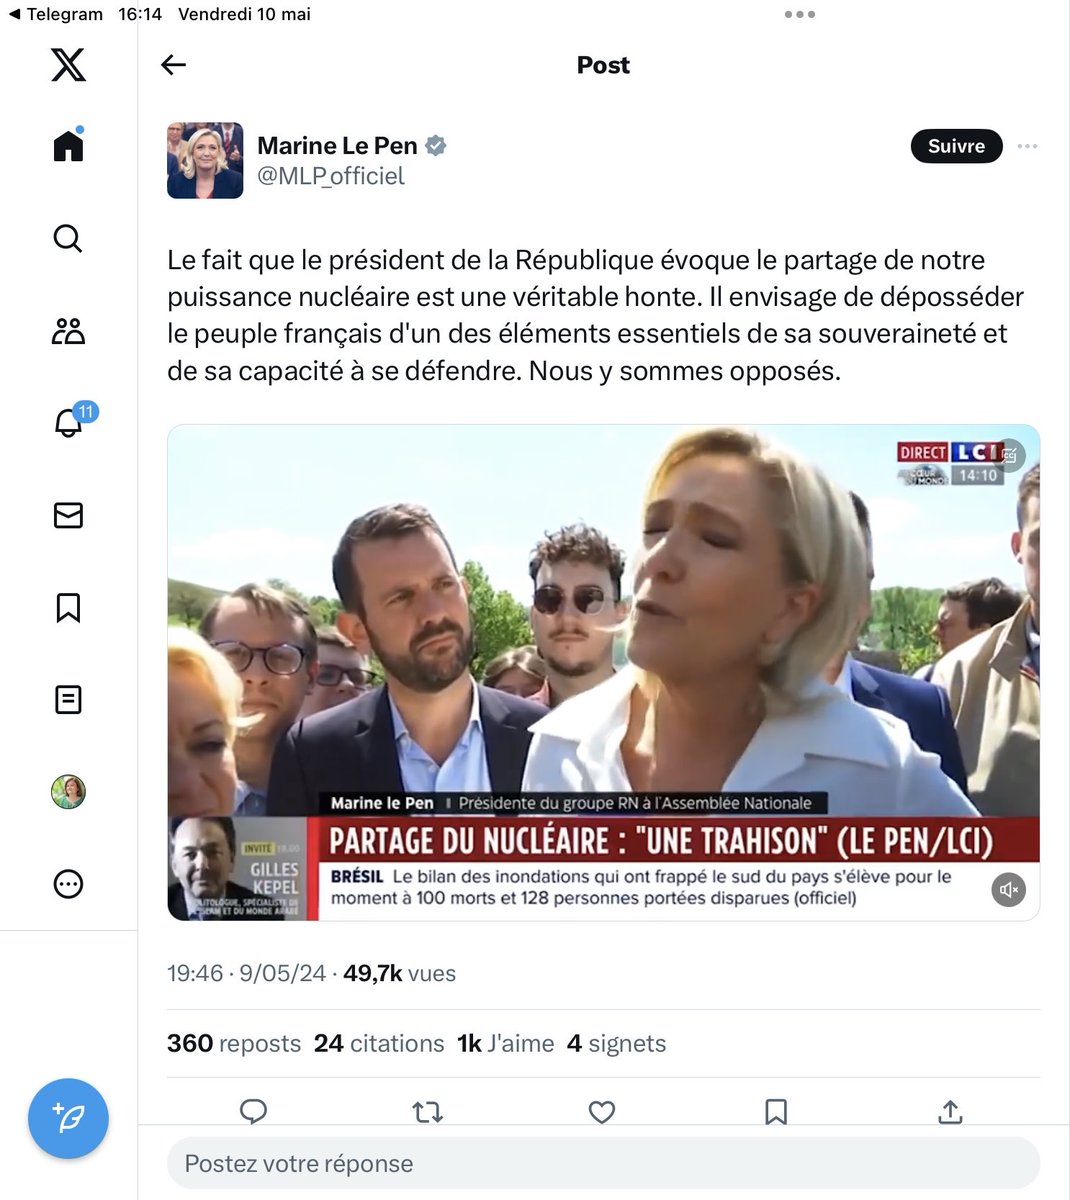 Une fois de plus, Marine Le Pen ment aux Français pour faire parler d’elle. C’est une habitude, une marque de fabrique, celle d’une candidate et d’un parti à qui il ne faut confier aucune responsabilité, même la plus infime.